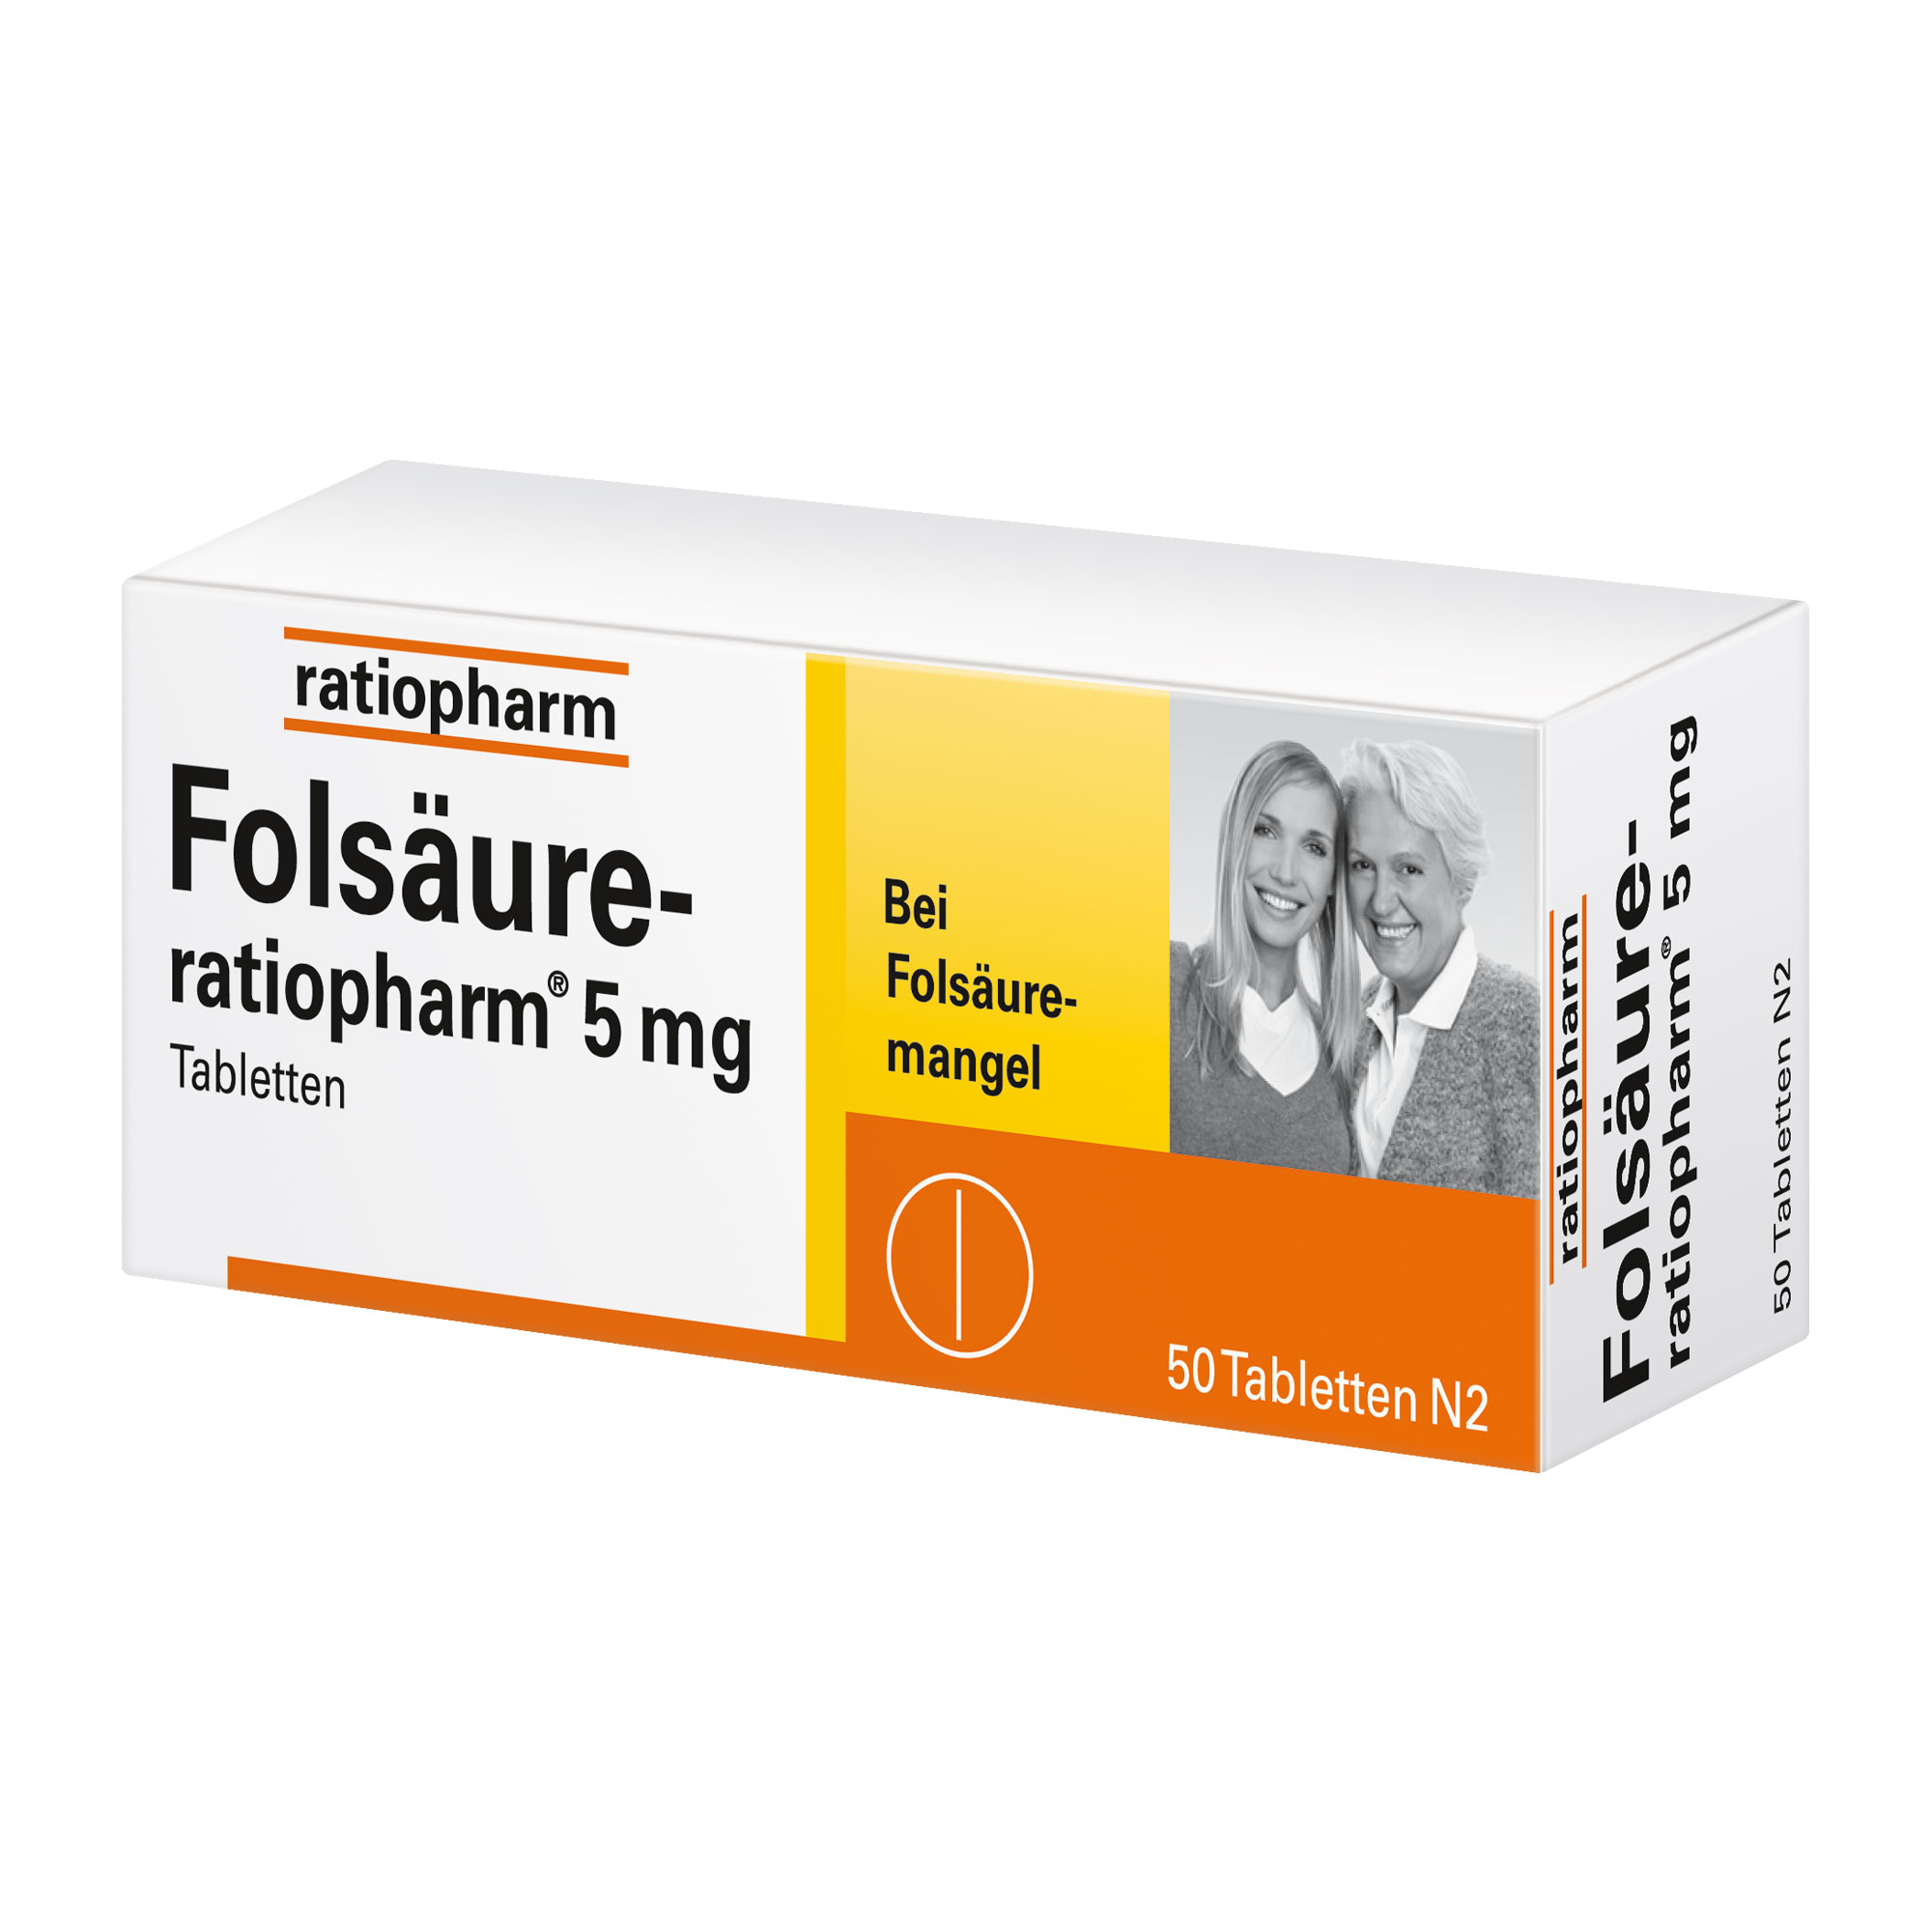 Vitaminpräparat zur Behandlung von Folsäuremangel, der diätetisch nicht behoben werden kann.